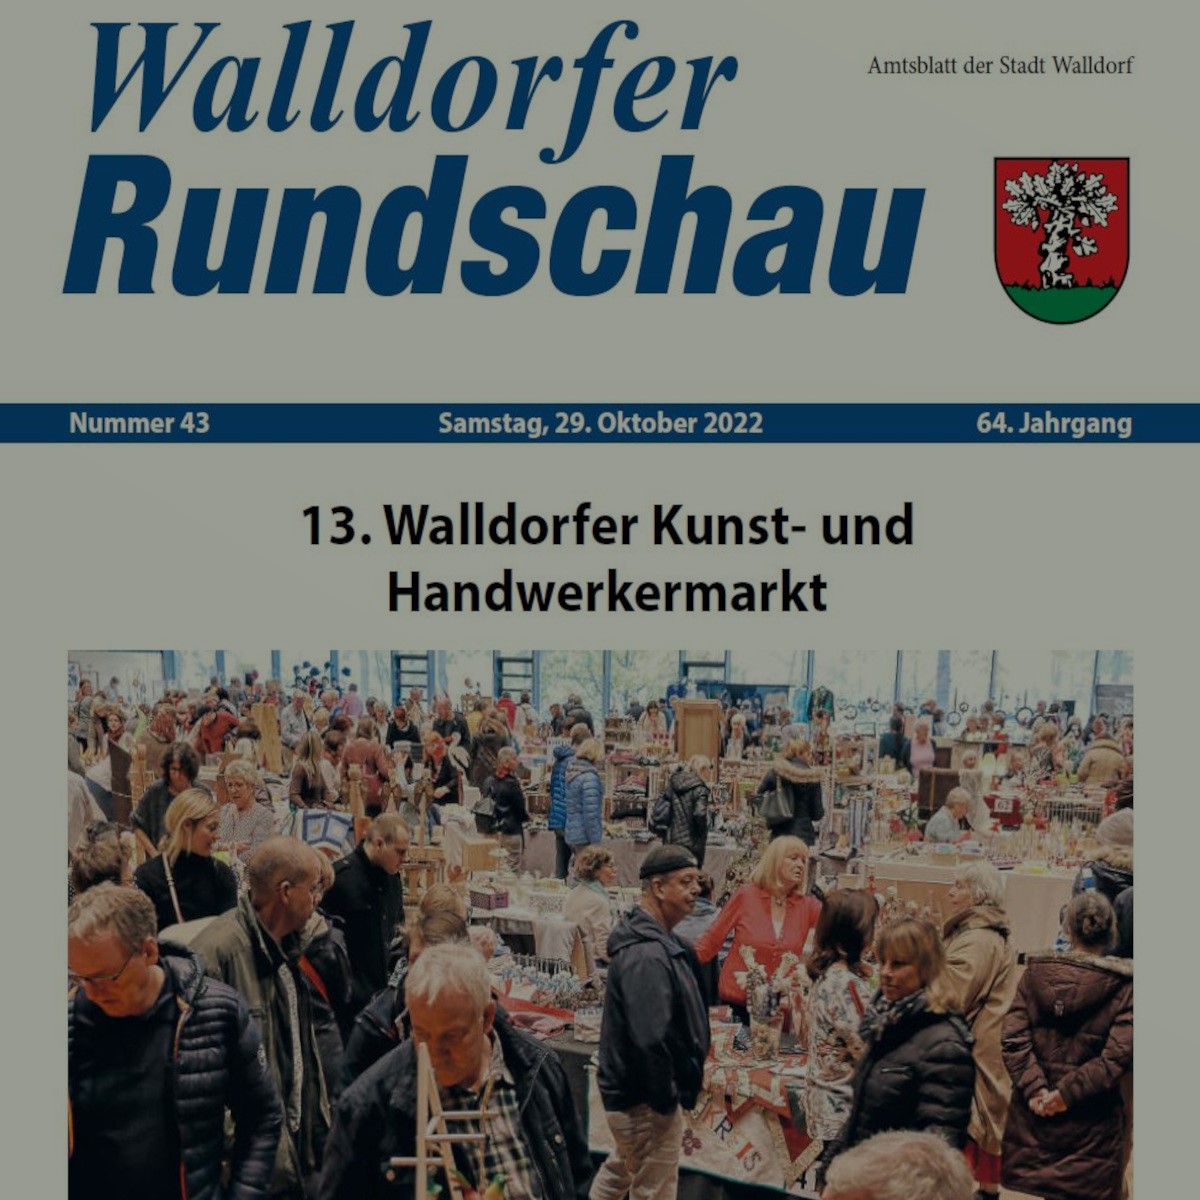 Die Walldorfer Rundschau 2022 Nr. 43 als E-paper | Bildschirmabgriff